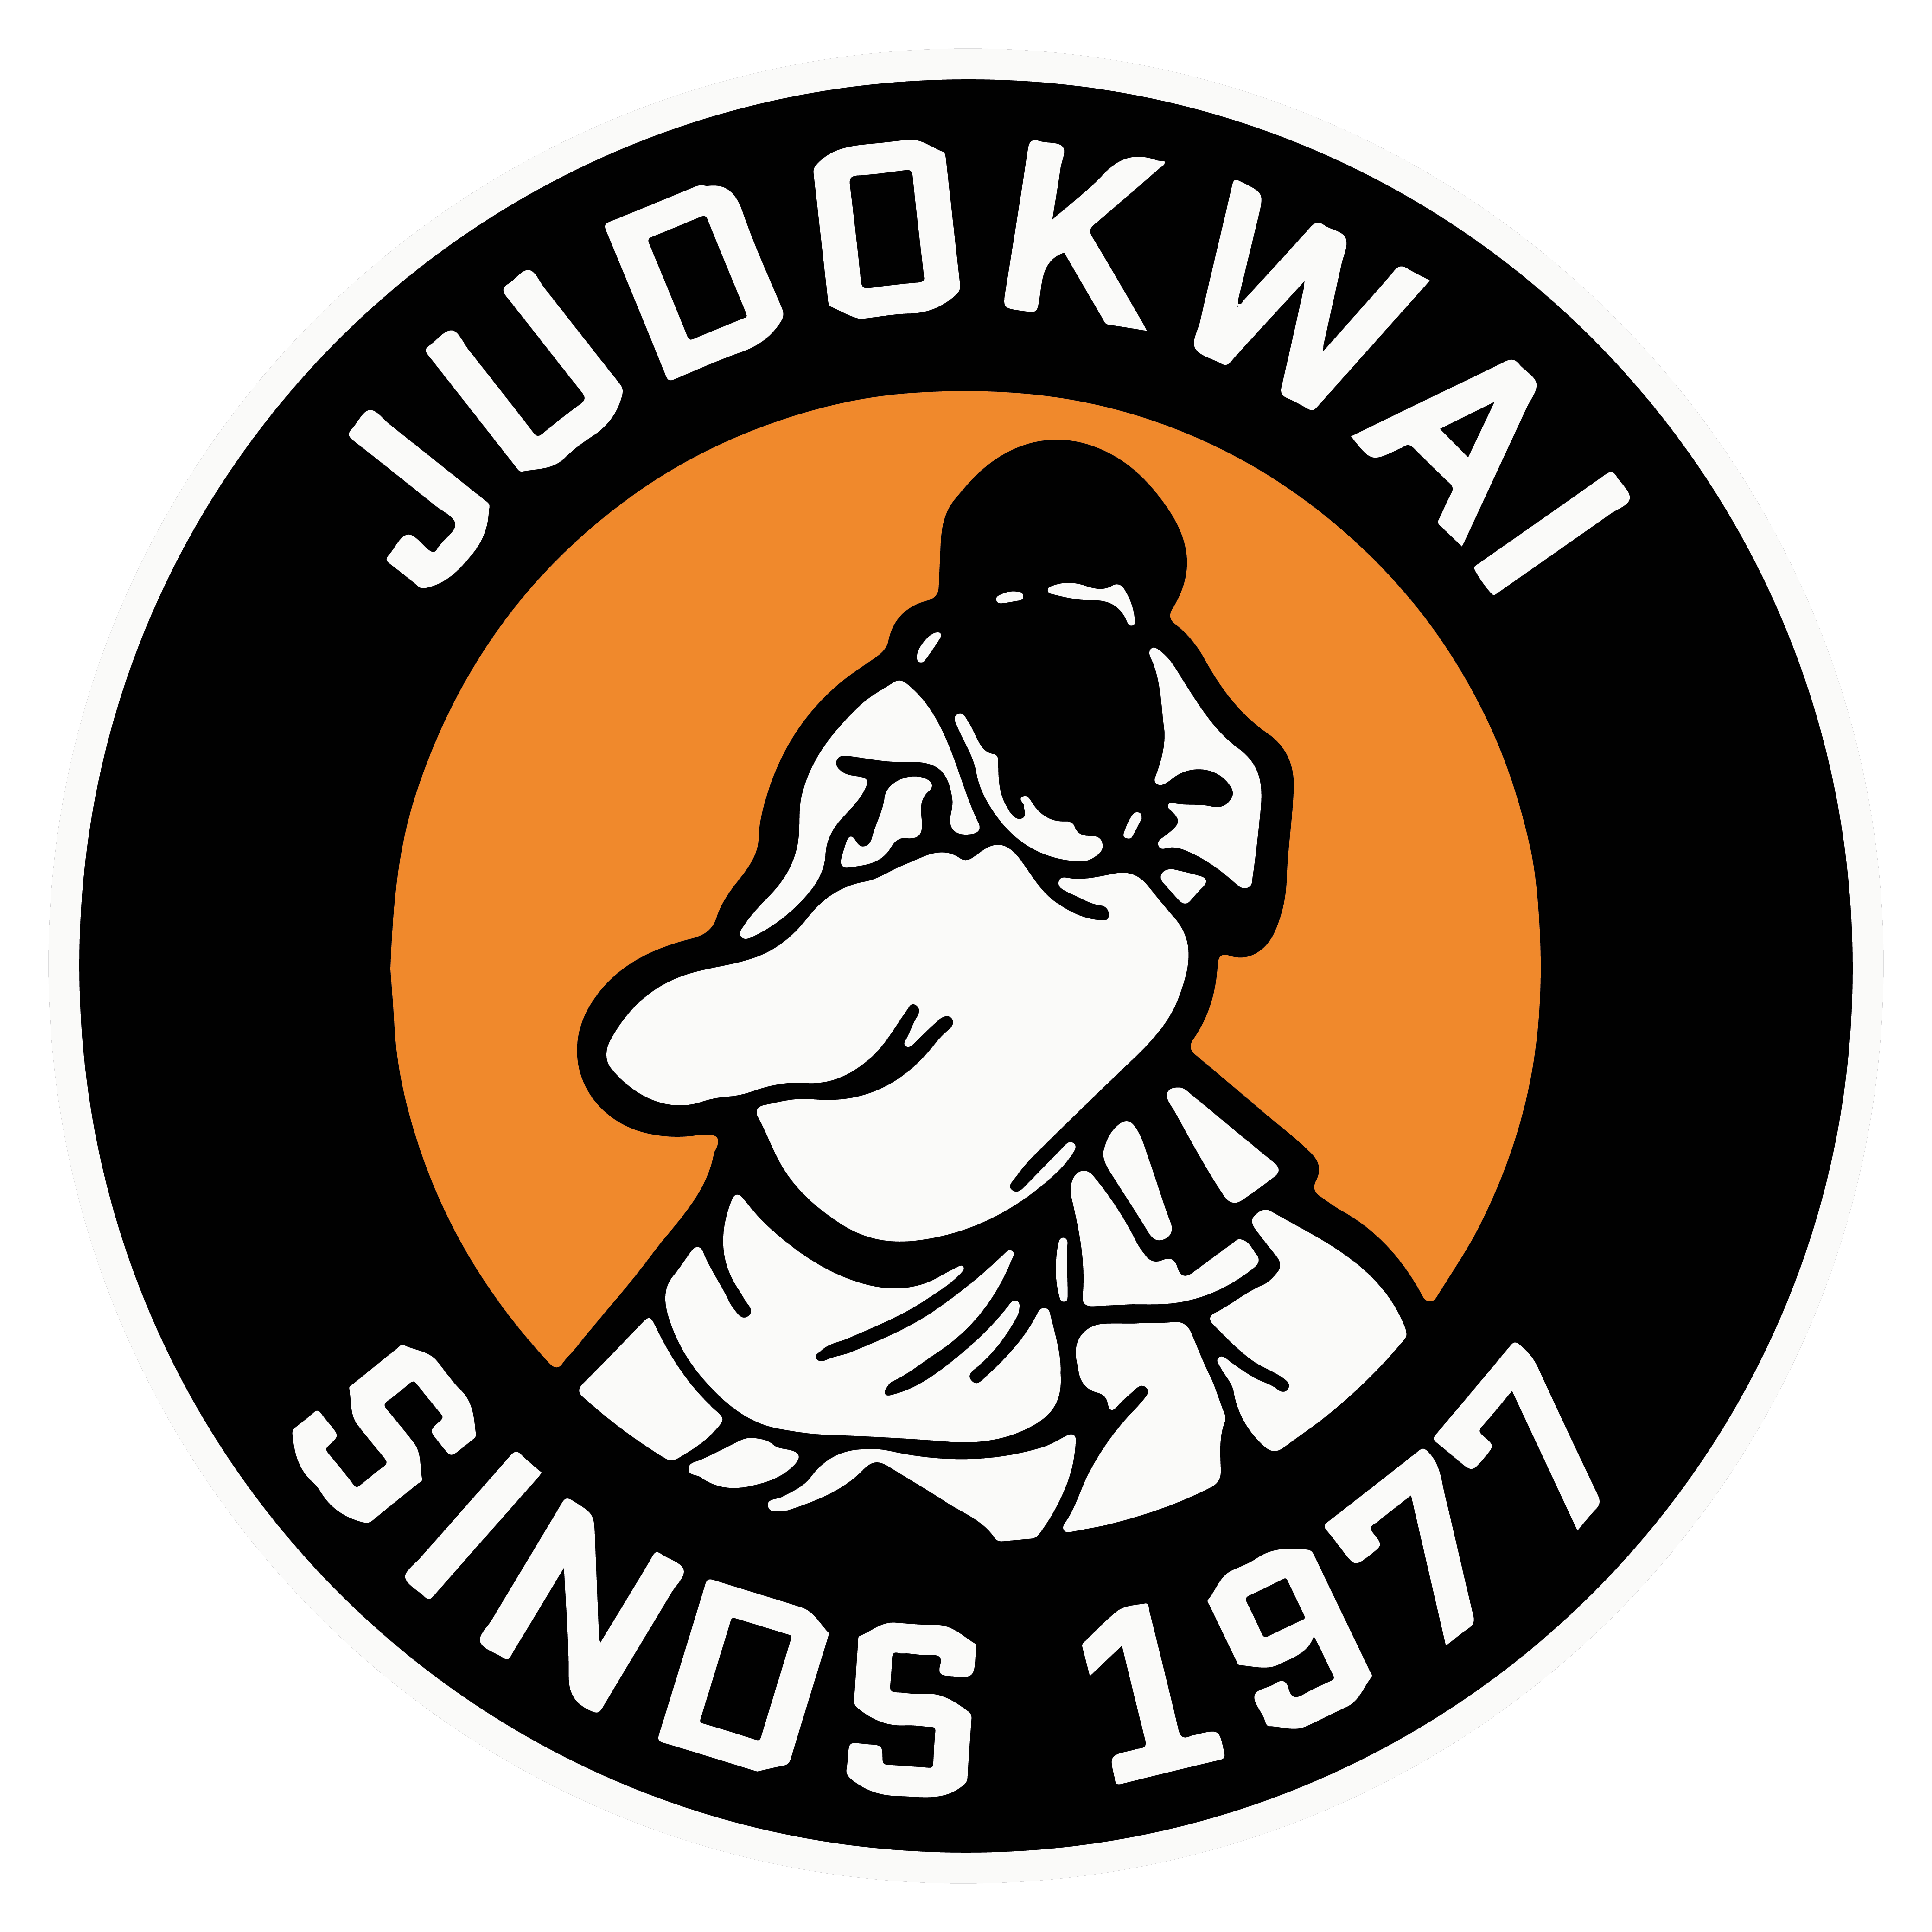 Judokwai-Sinds1977